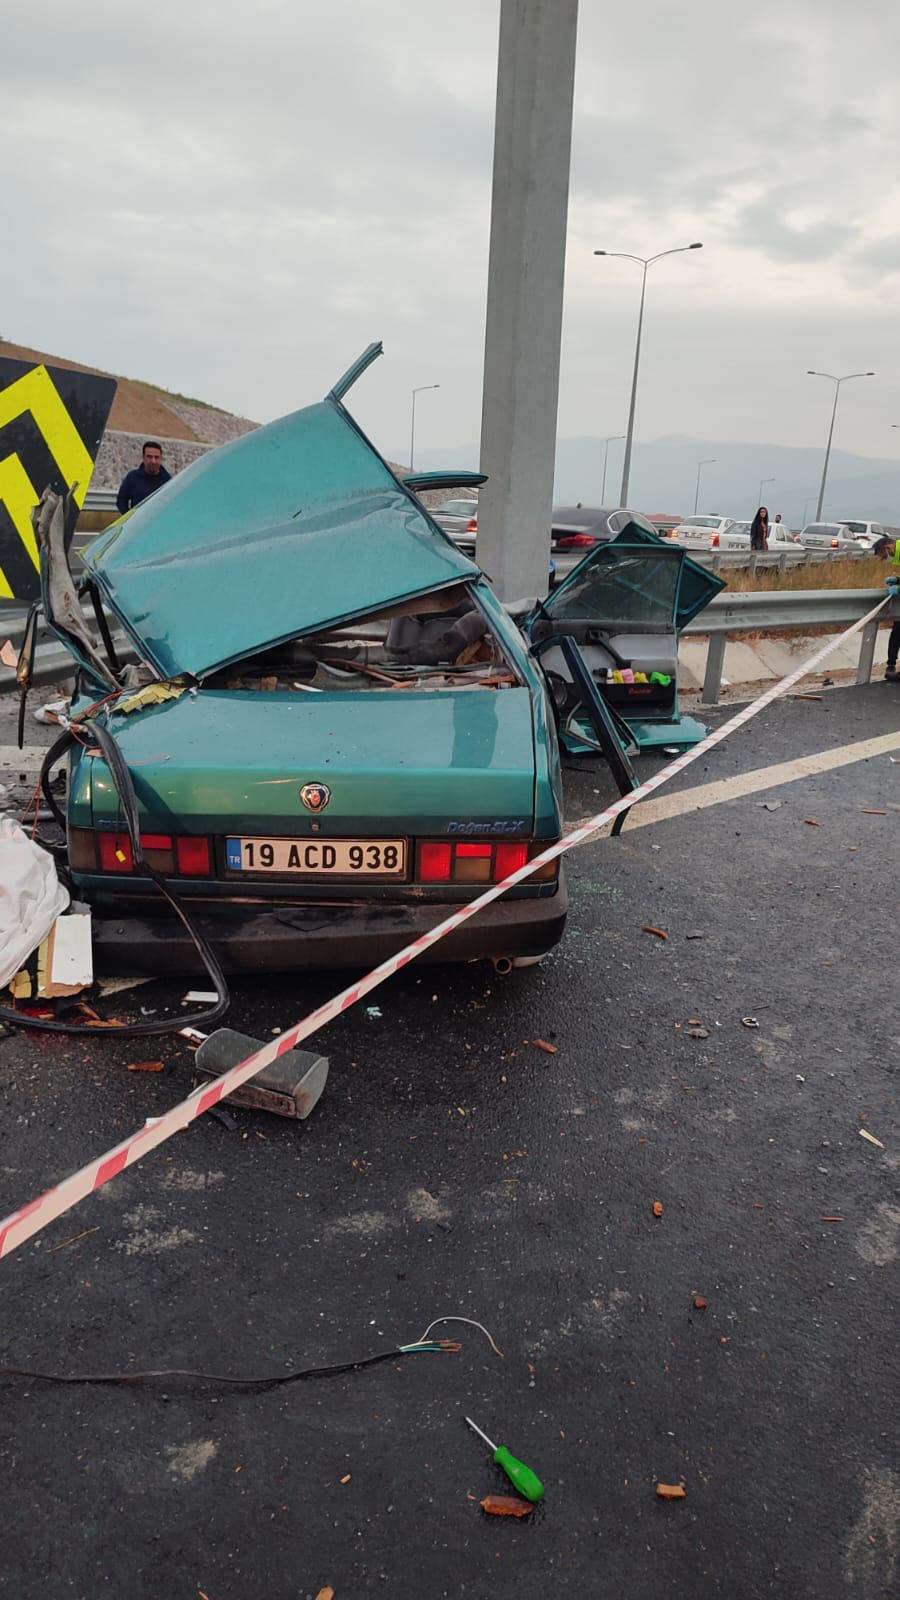 İzmir Menemen'de feci kaza! Otomobil bariyerlere çarptı: 2 ölü, 3 yaralı 